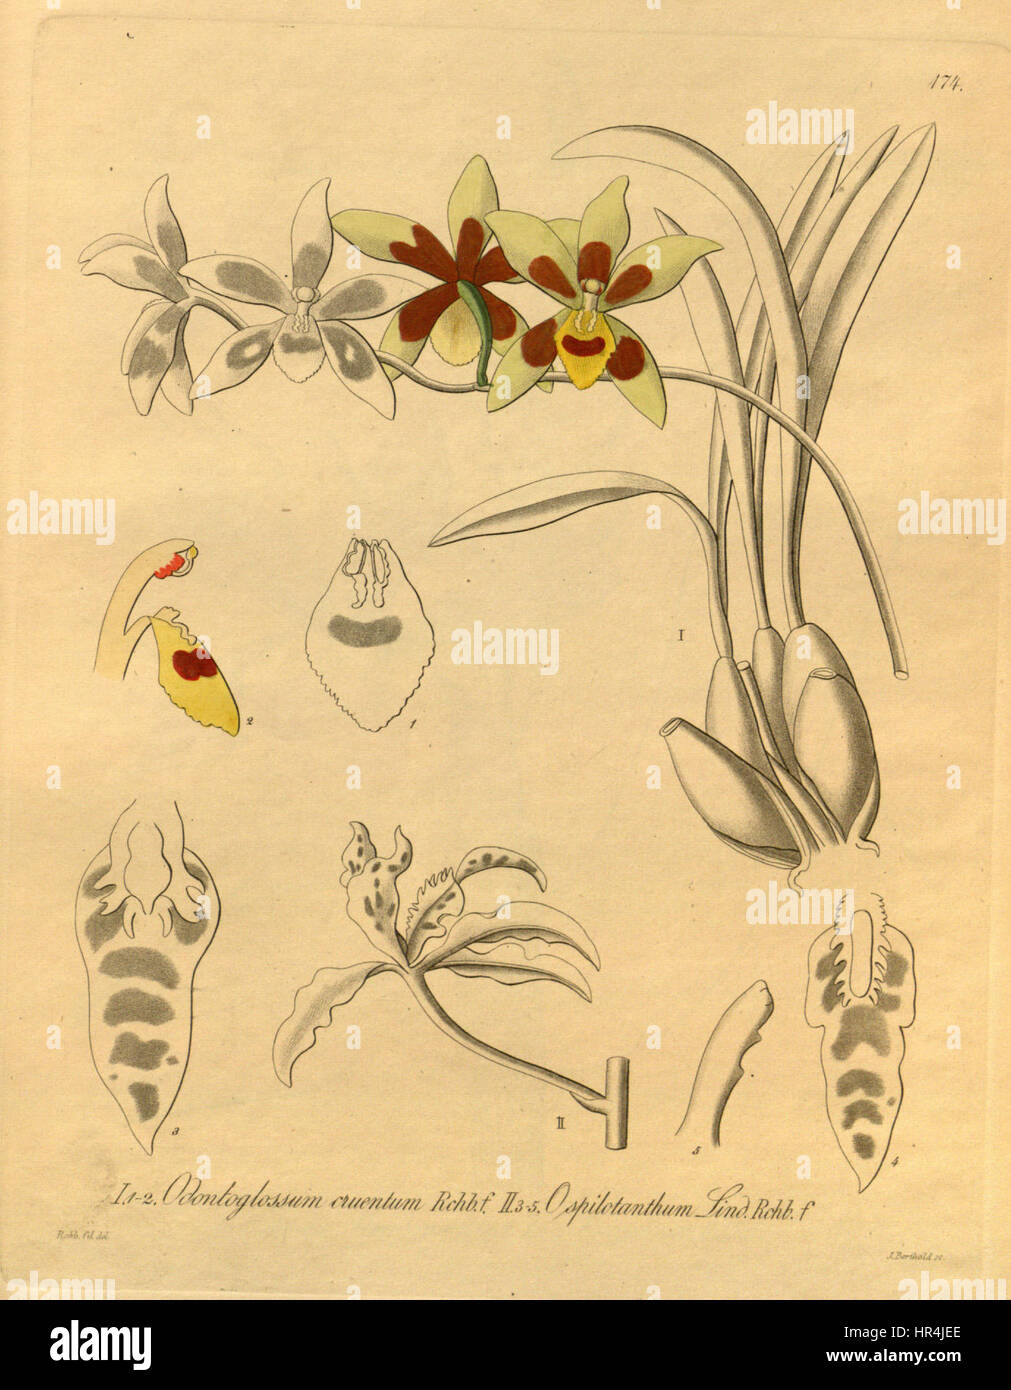 Odontoglossum cruentum and Cyrtochilum angustatum (as Odontoglossum spilotanthum) - Xenia 2-174 (1874) Stock Photo